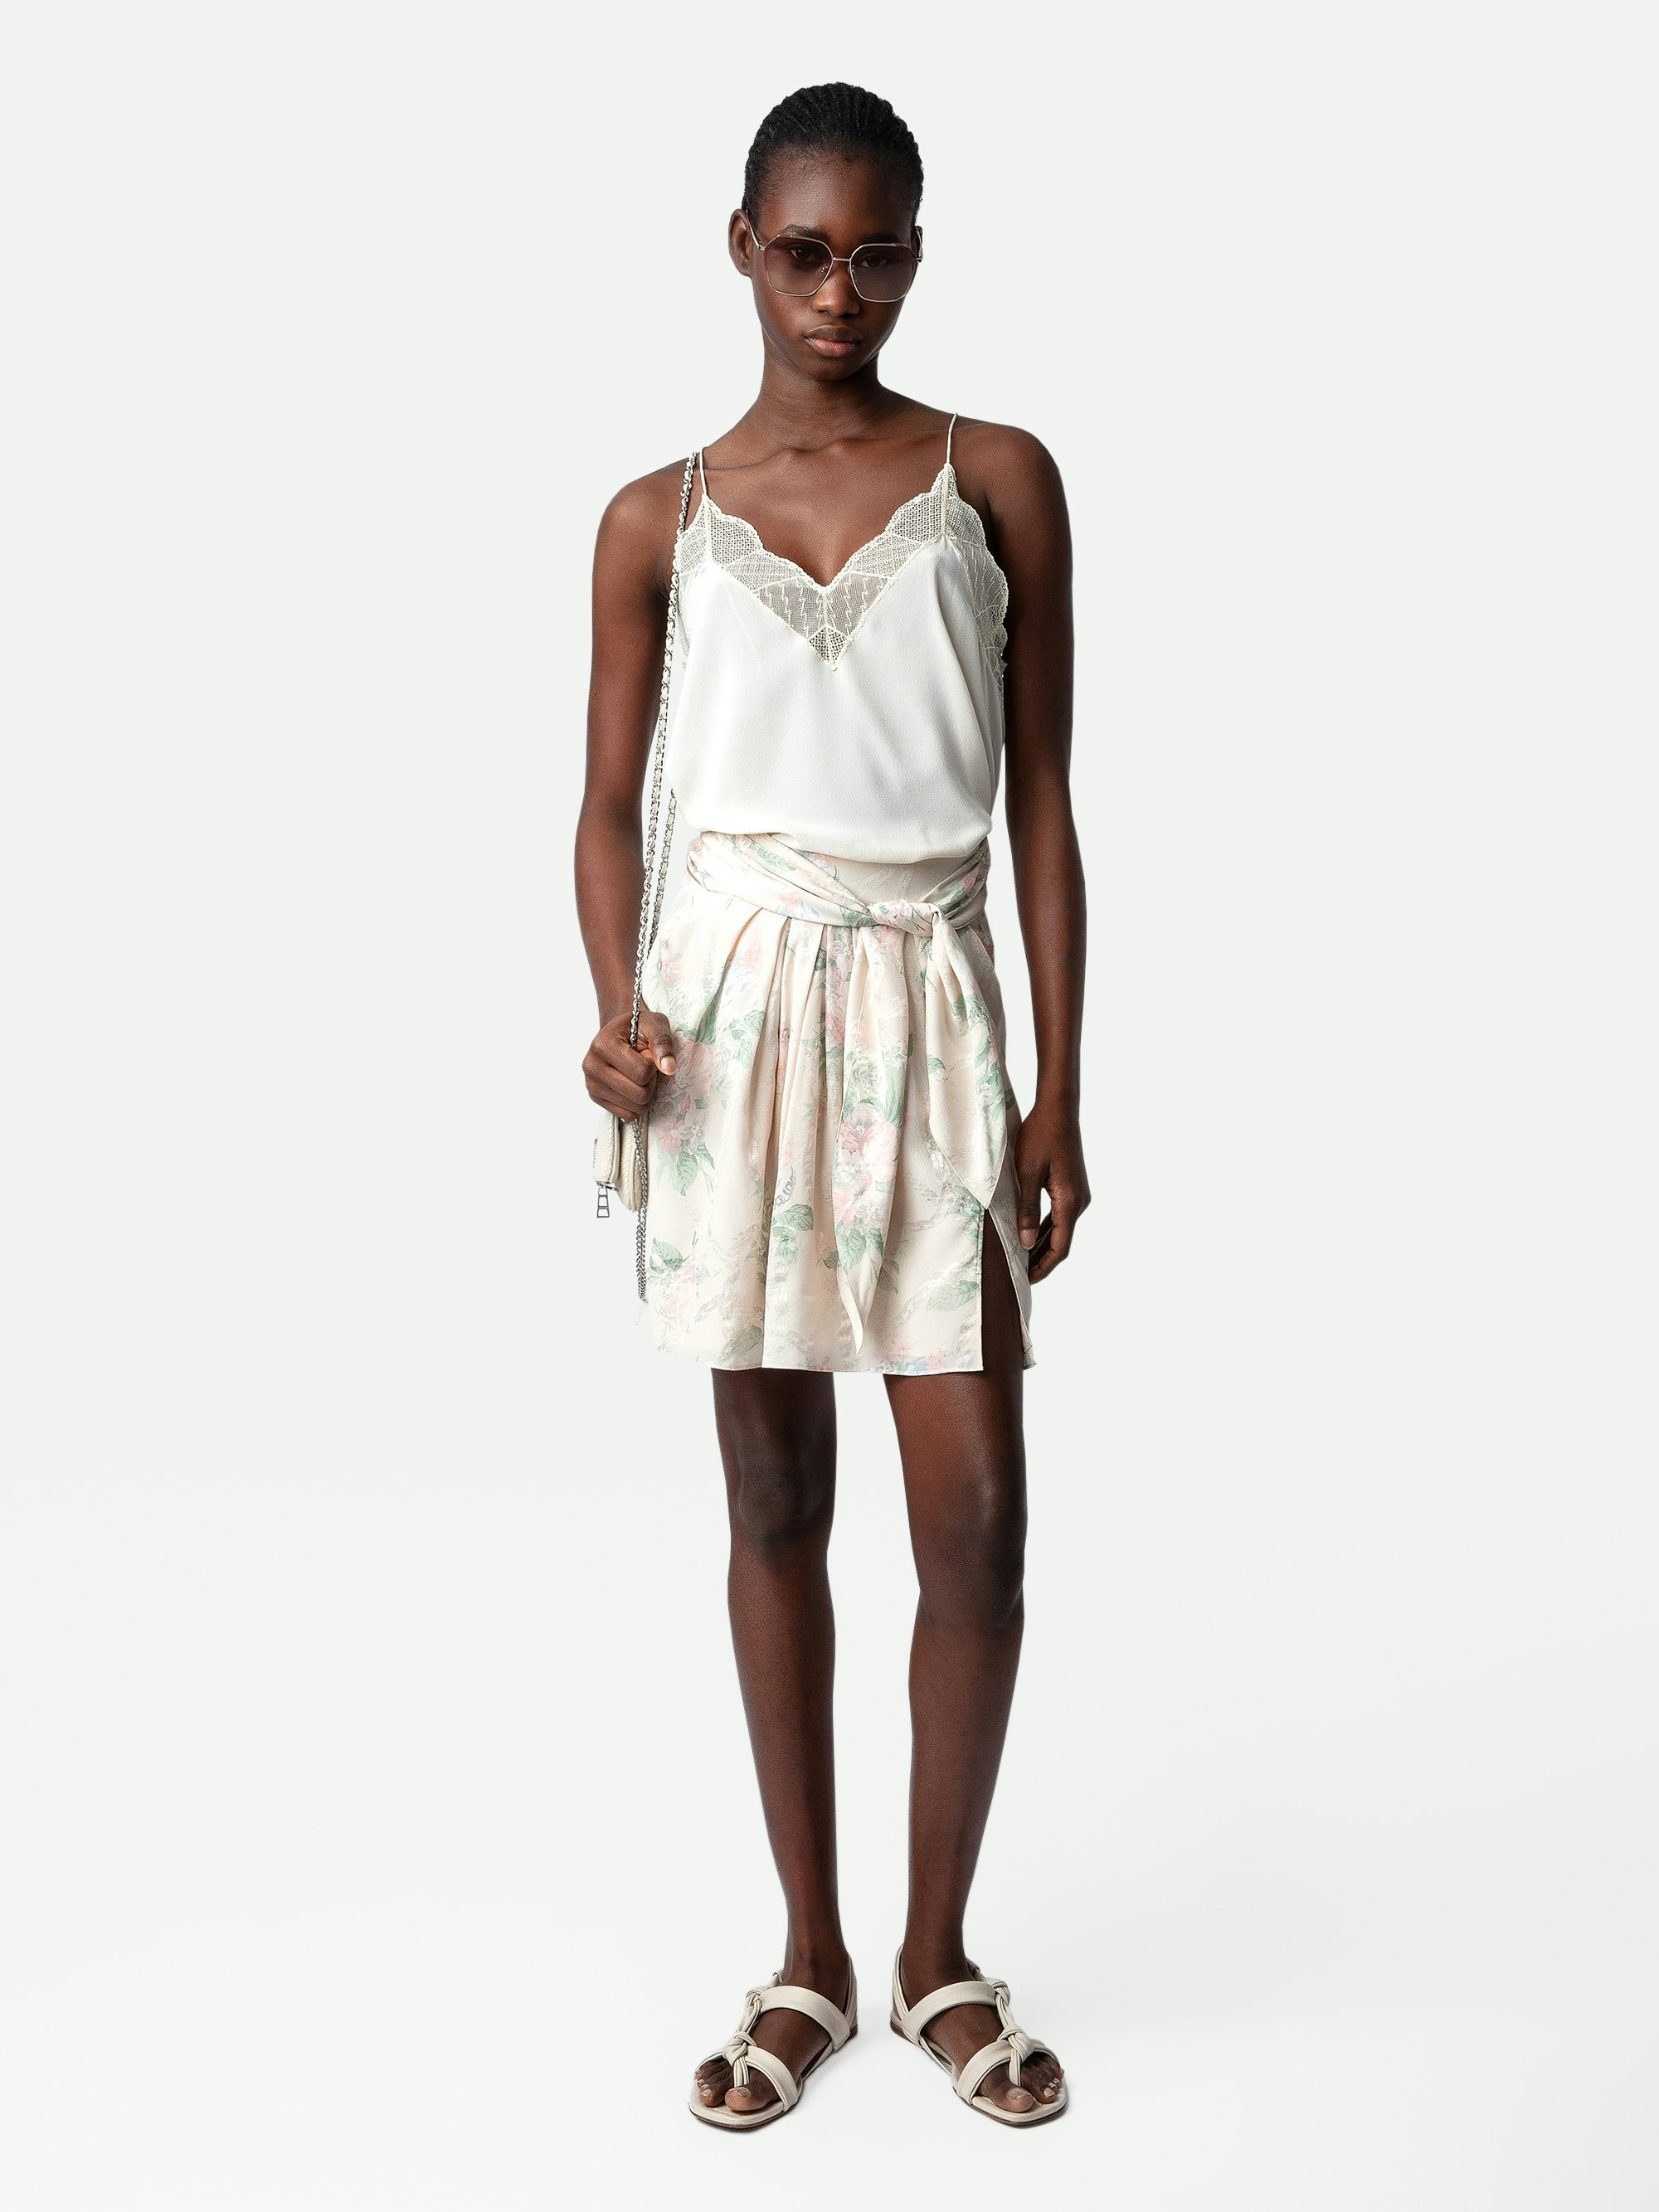 Joji Skirt - Women's off white floral wrap skirt.